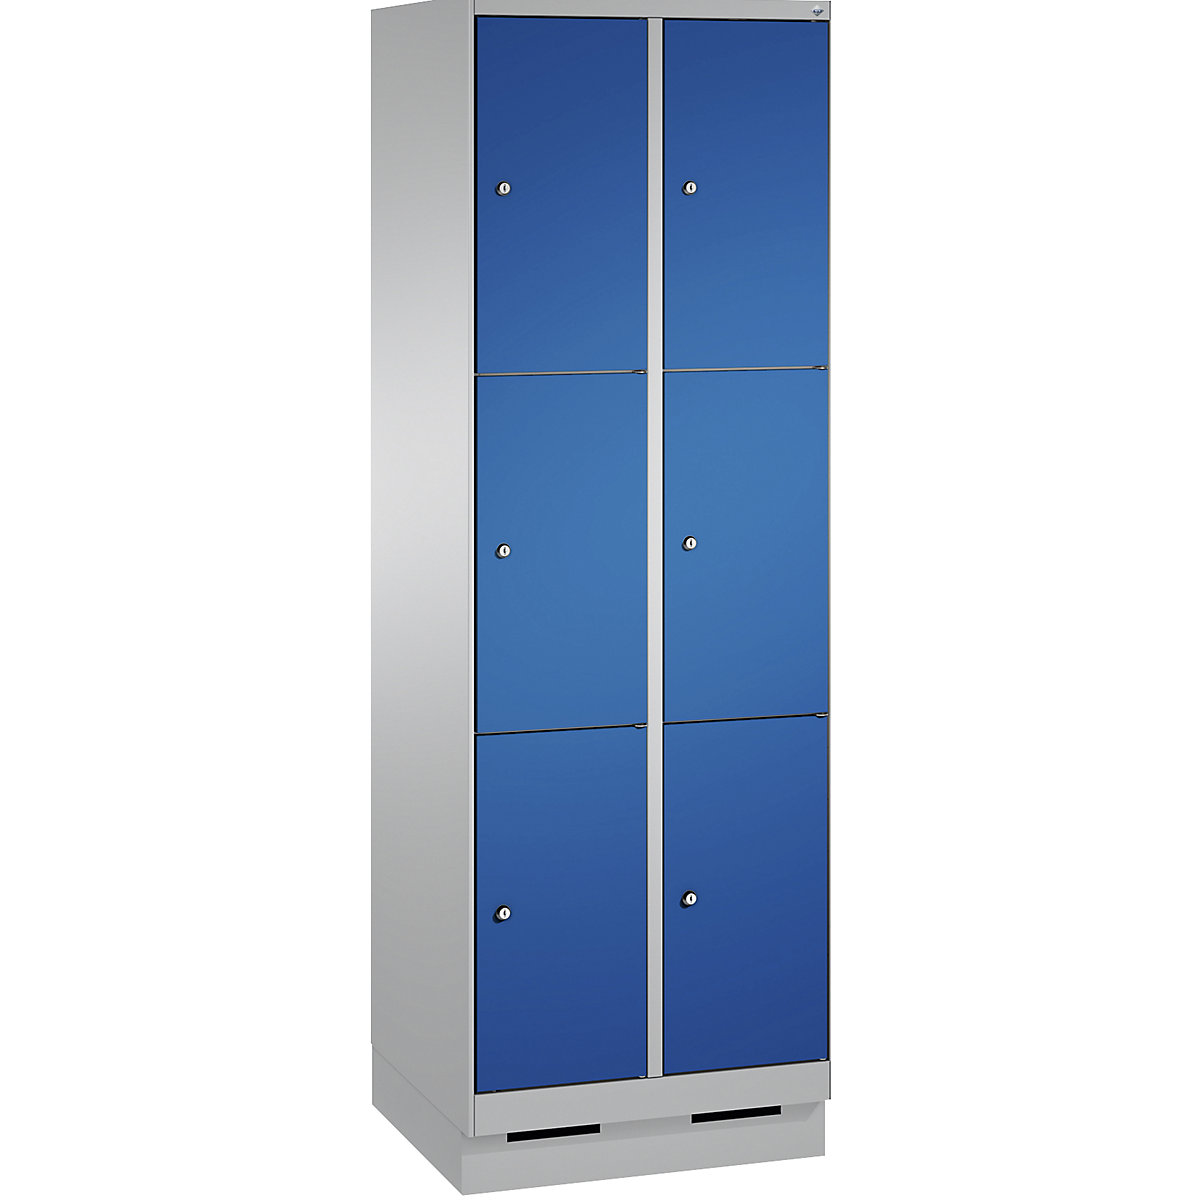 Armoire à casiers sur socle EVOLO – C+P, 2 compartiments, 3 casiers chacun, largeur compartiments 300 mm, aluminium / bleu gentiane-7